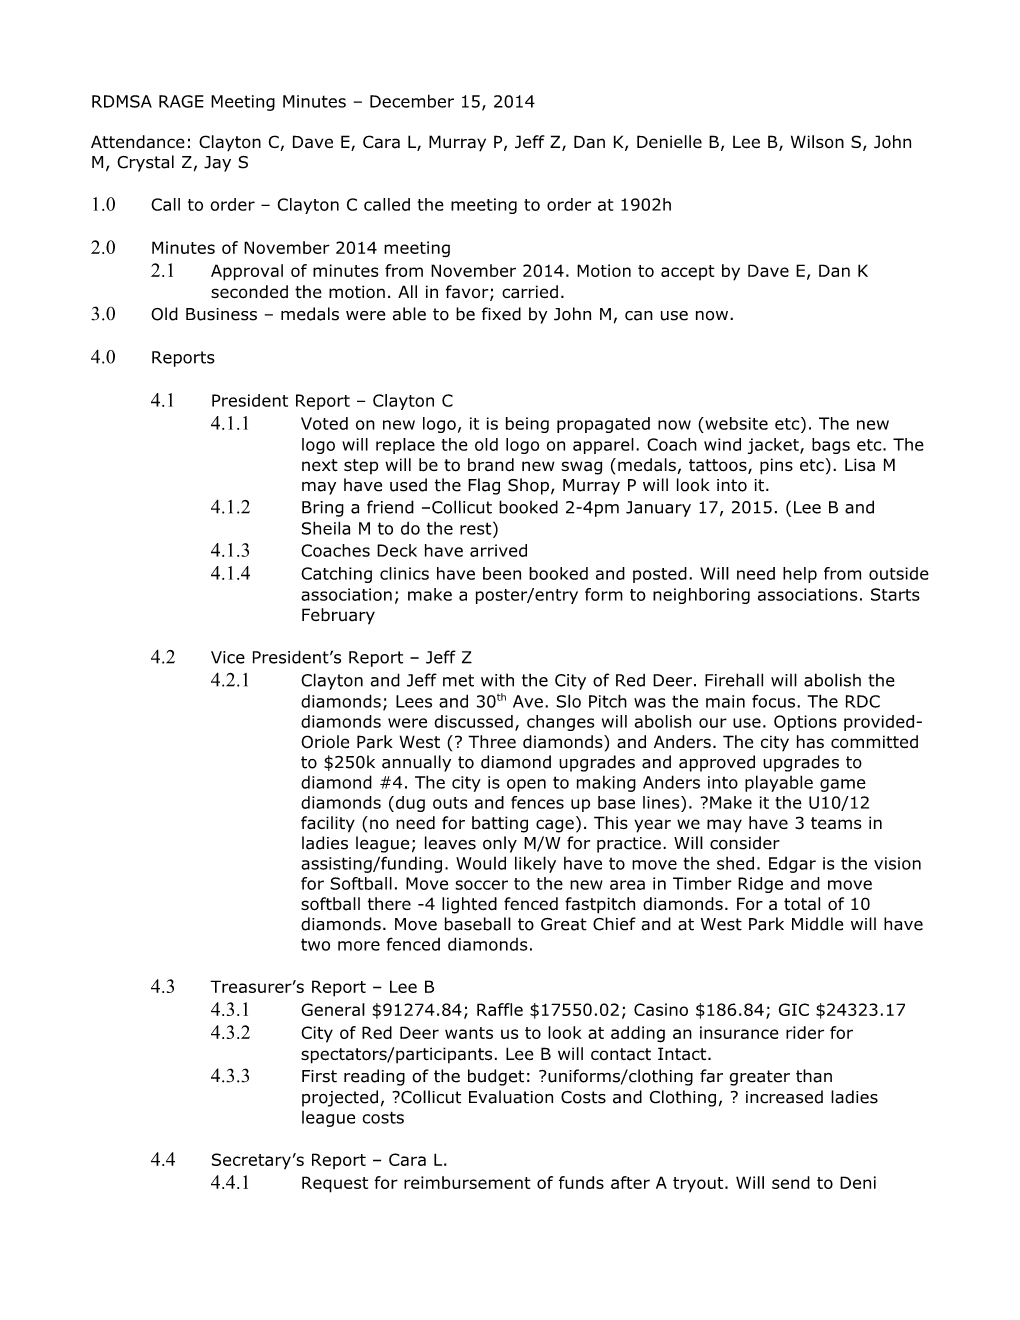 RDMSA RAGE Meeting Minutes December 15, 2014